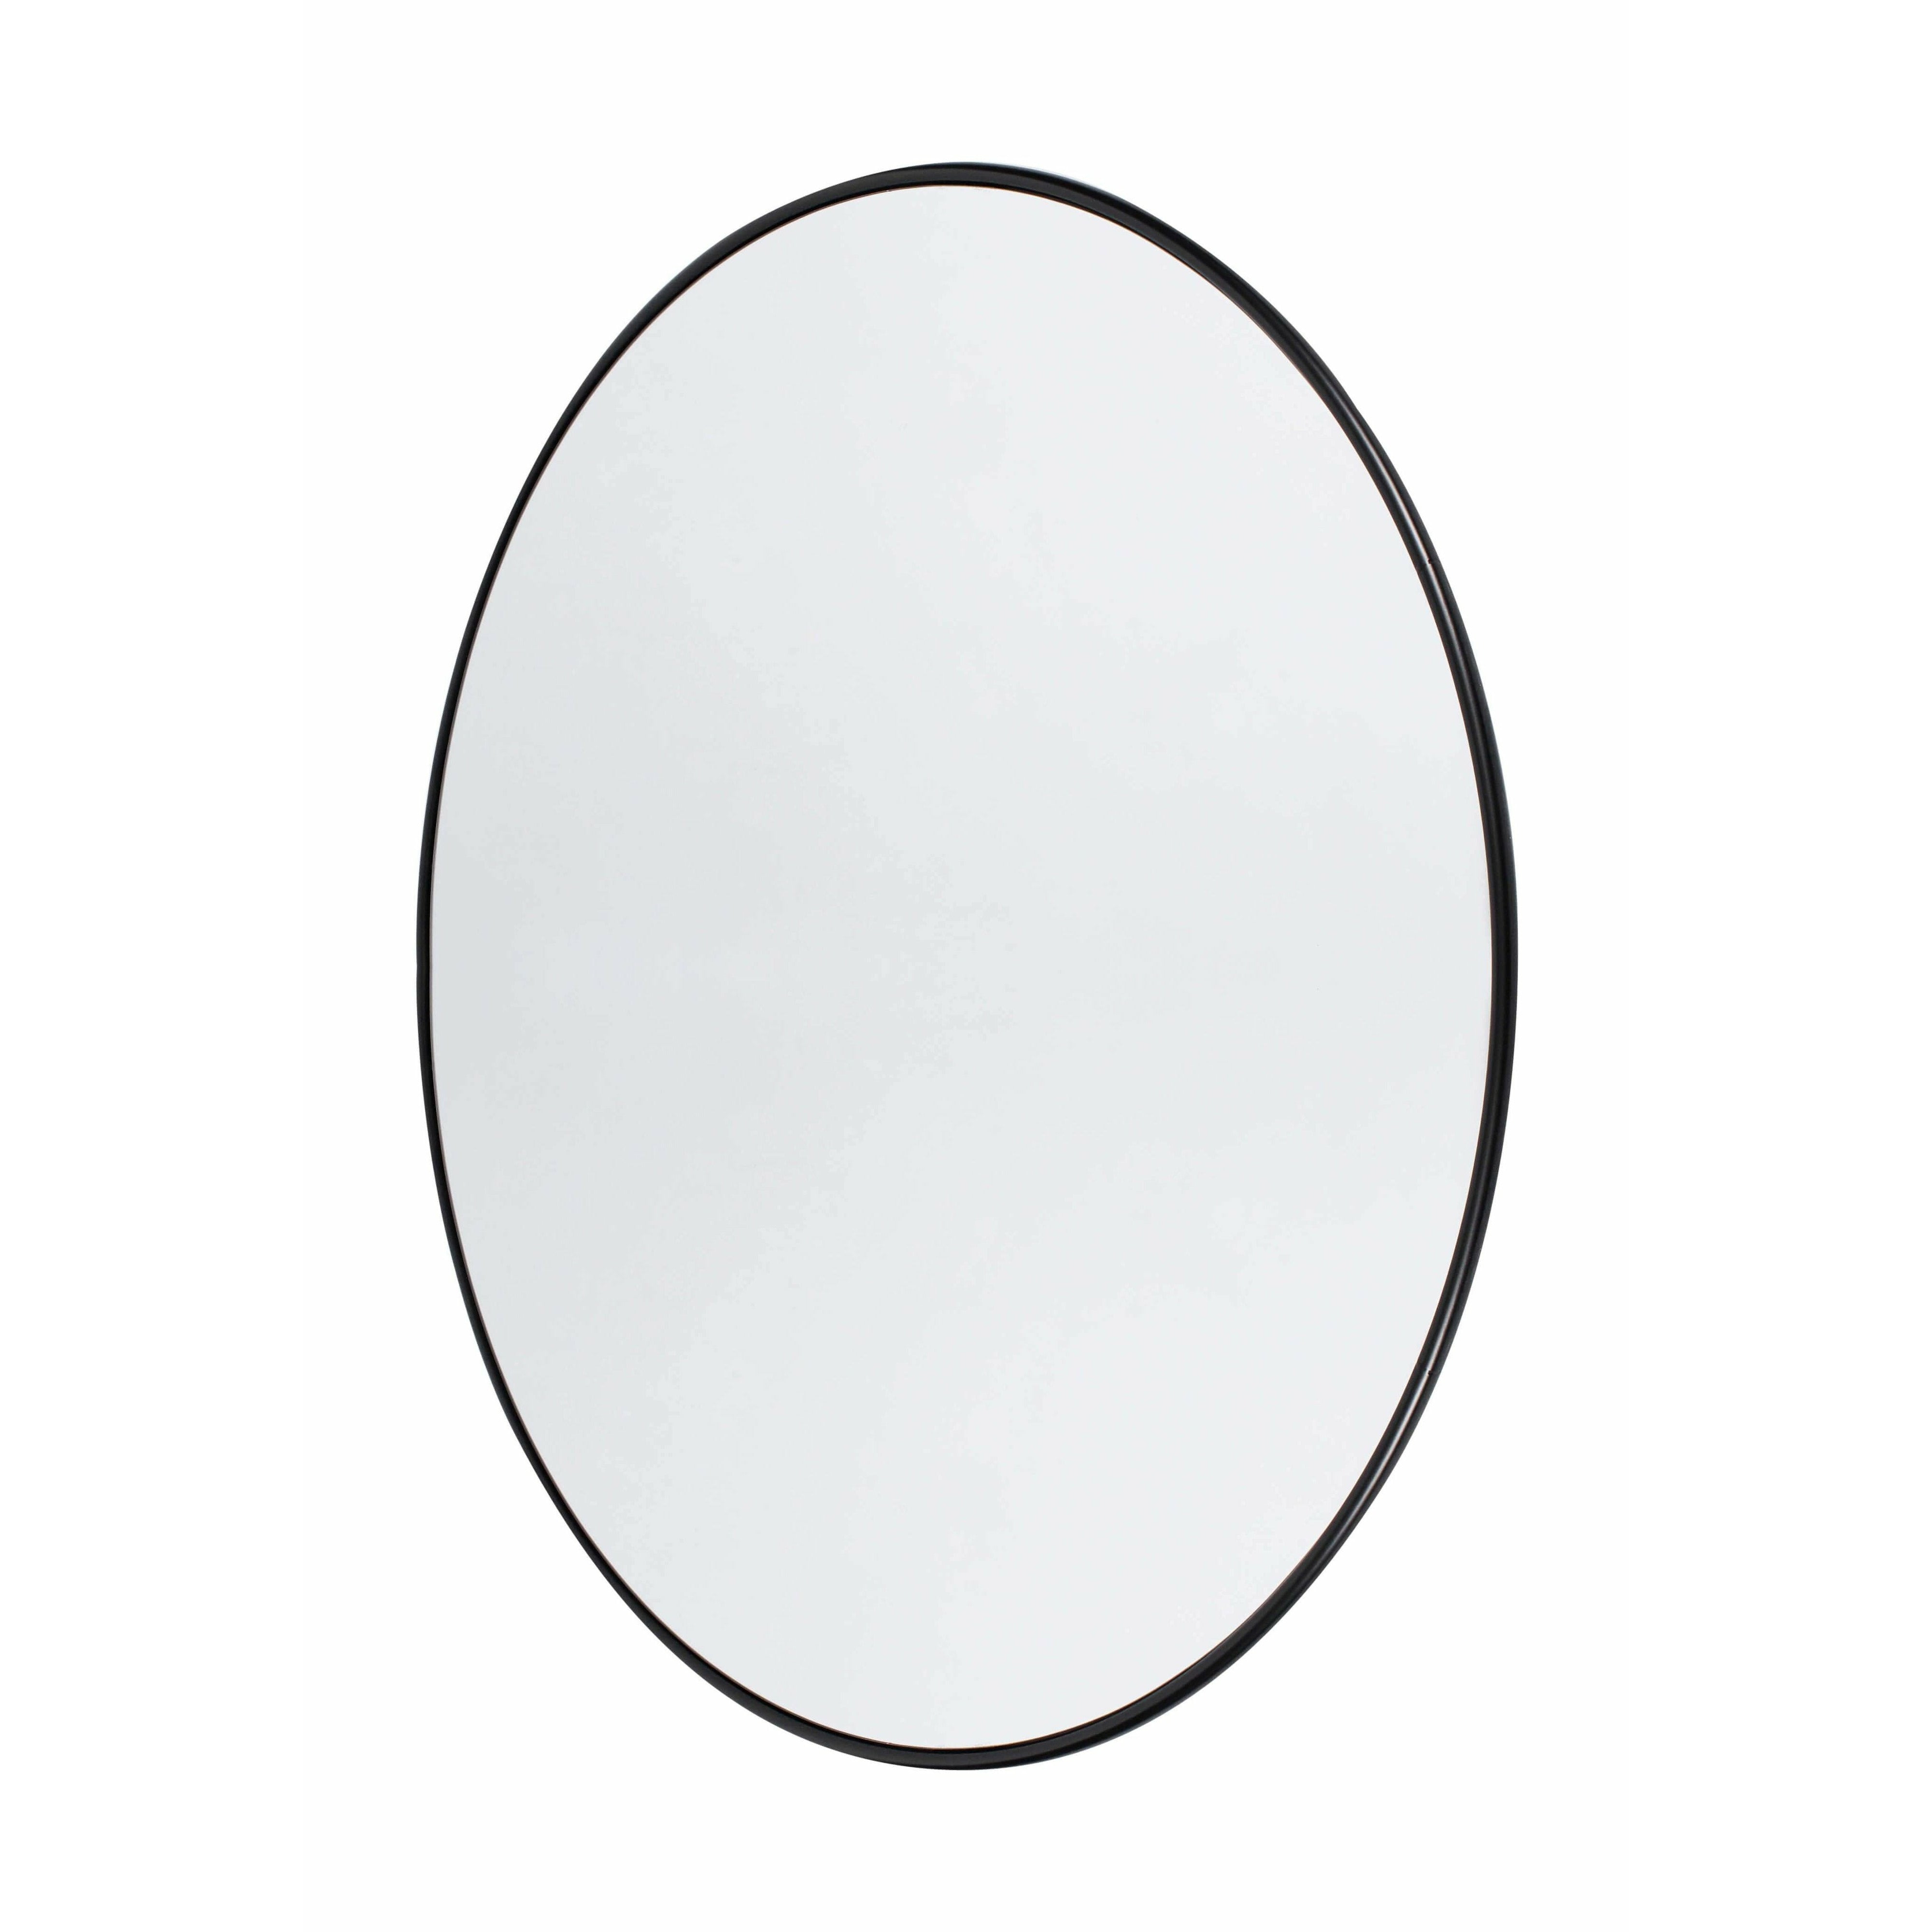 Muubs Kööpenhamina peili pyöreä musta, 110 cm